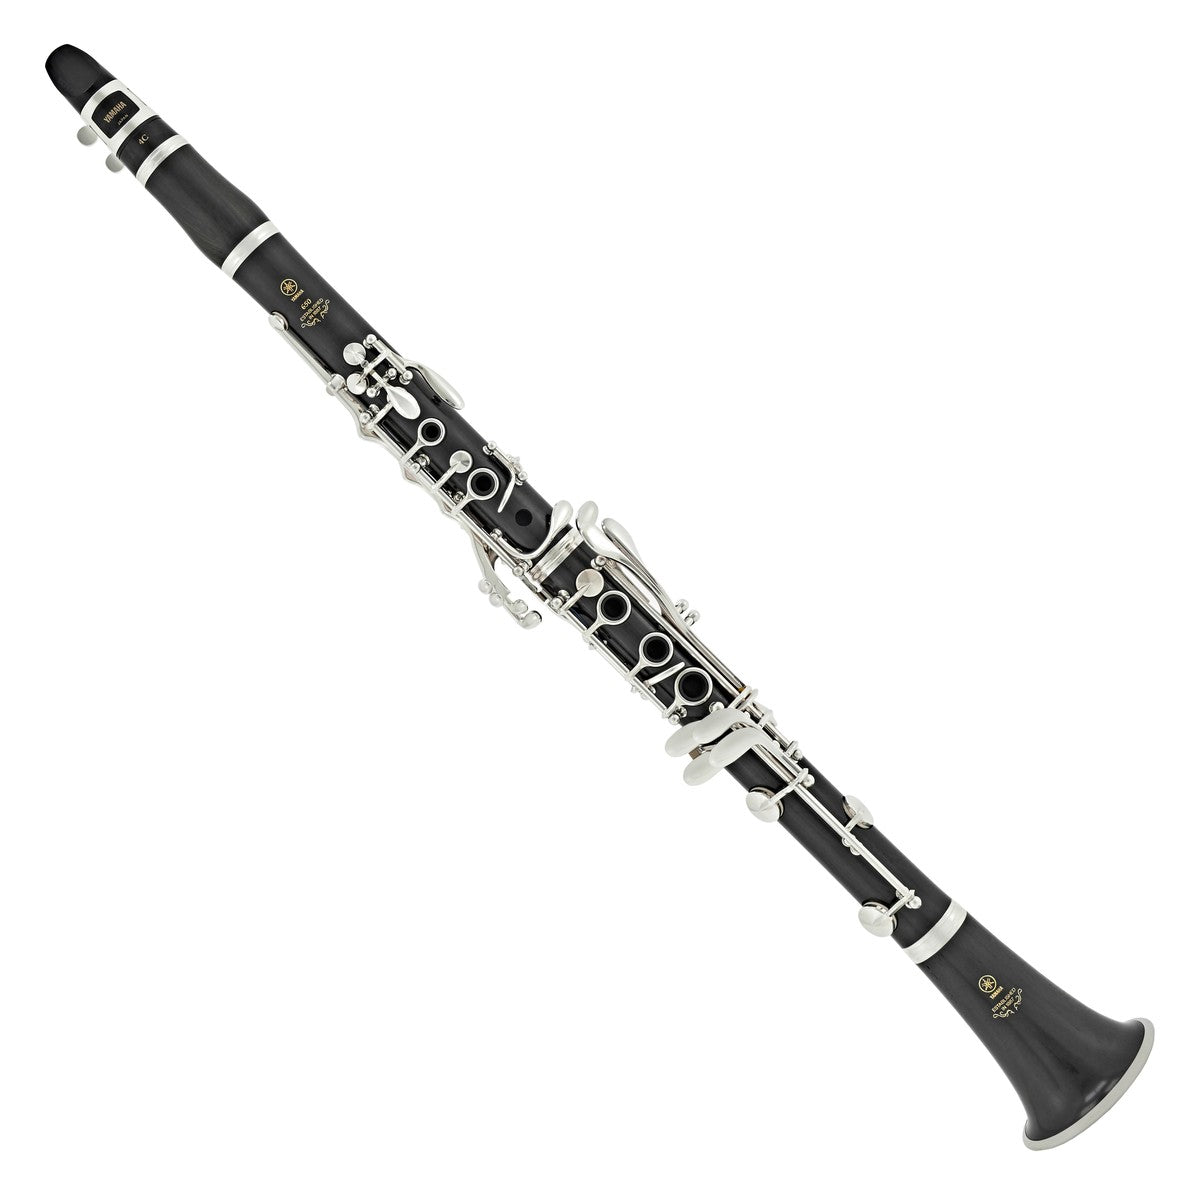 Kèn Clarinet Yamaha YCL-650 II Bb - Việt Music